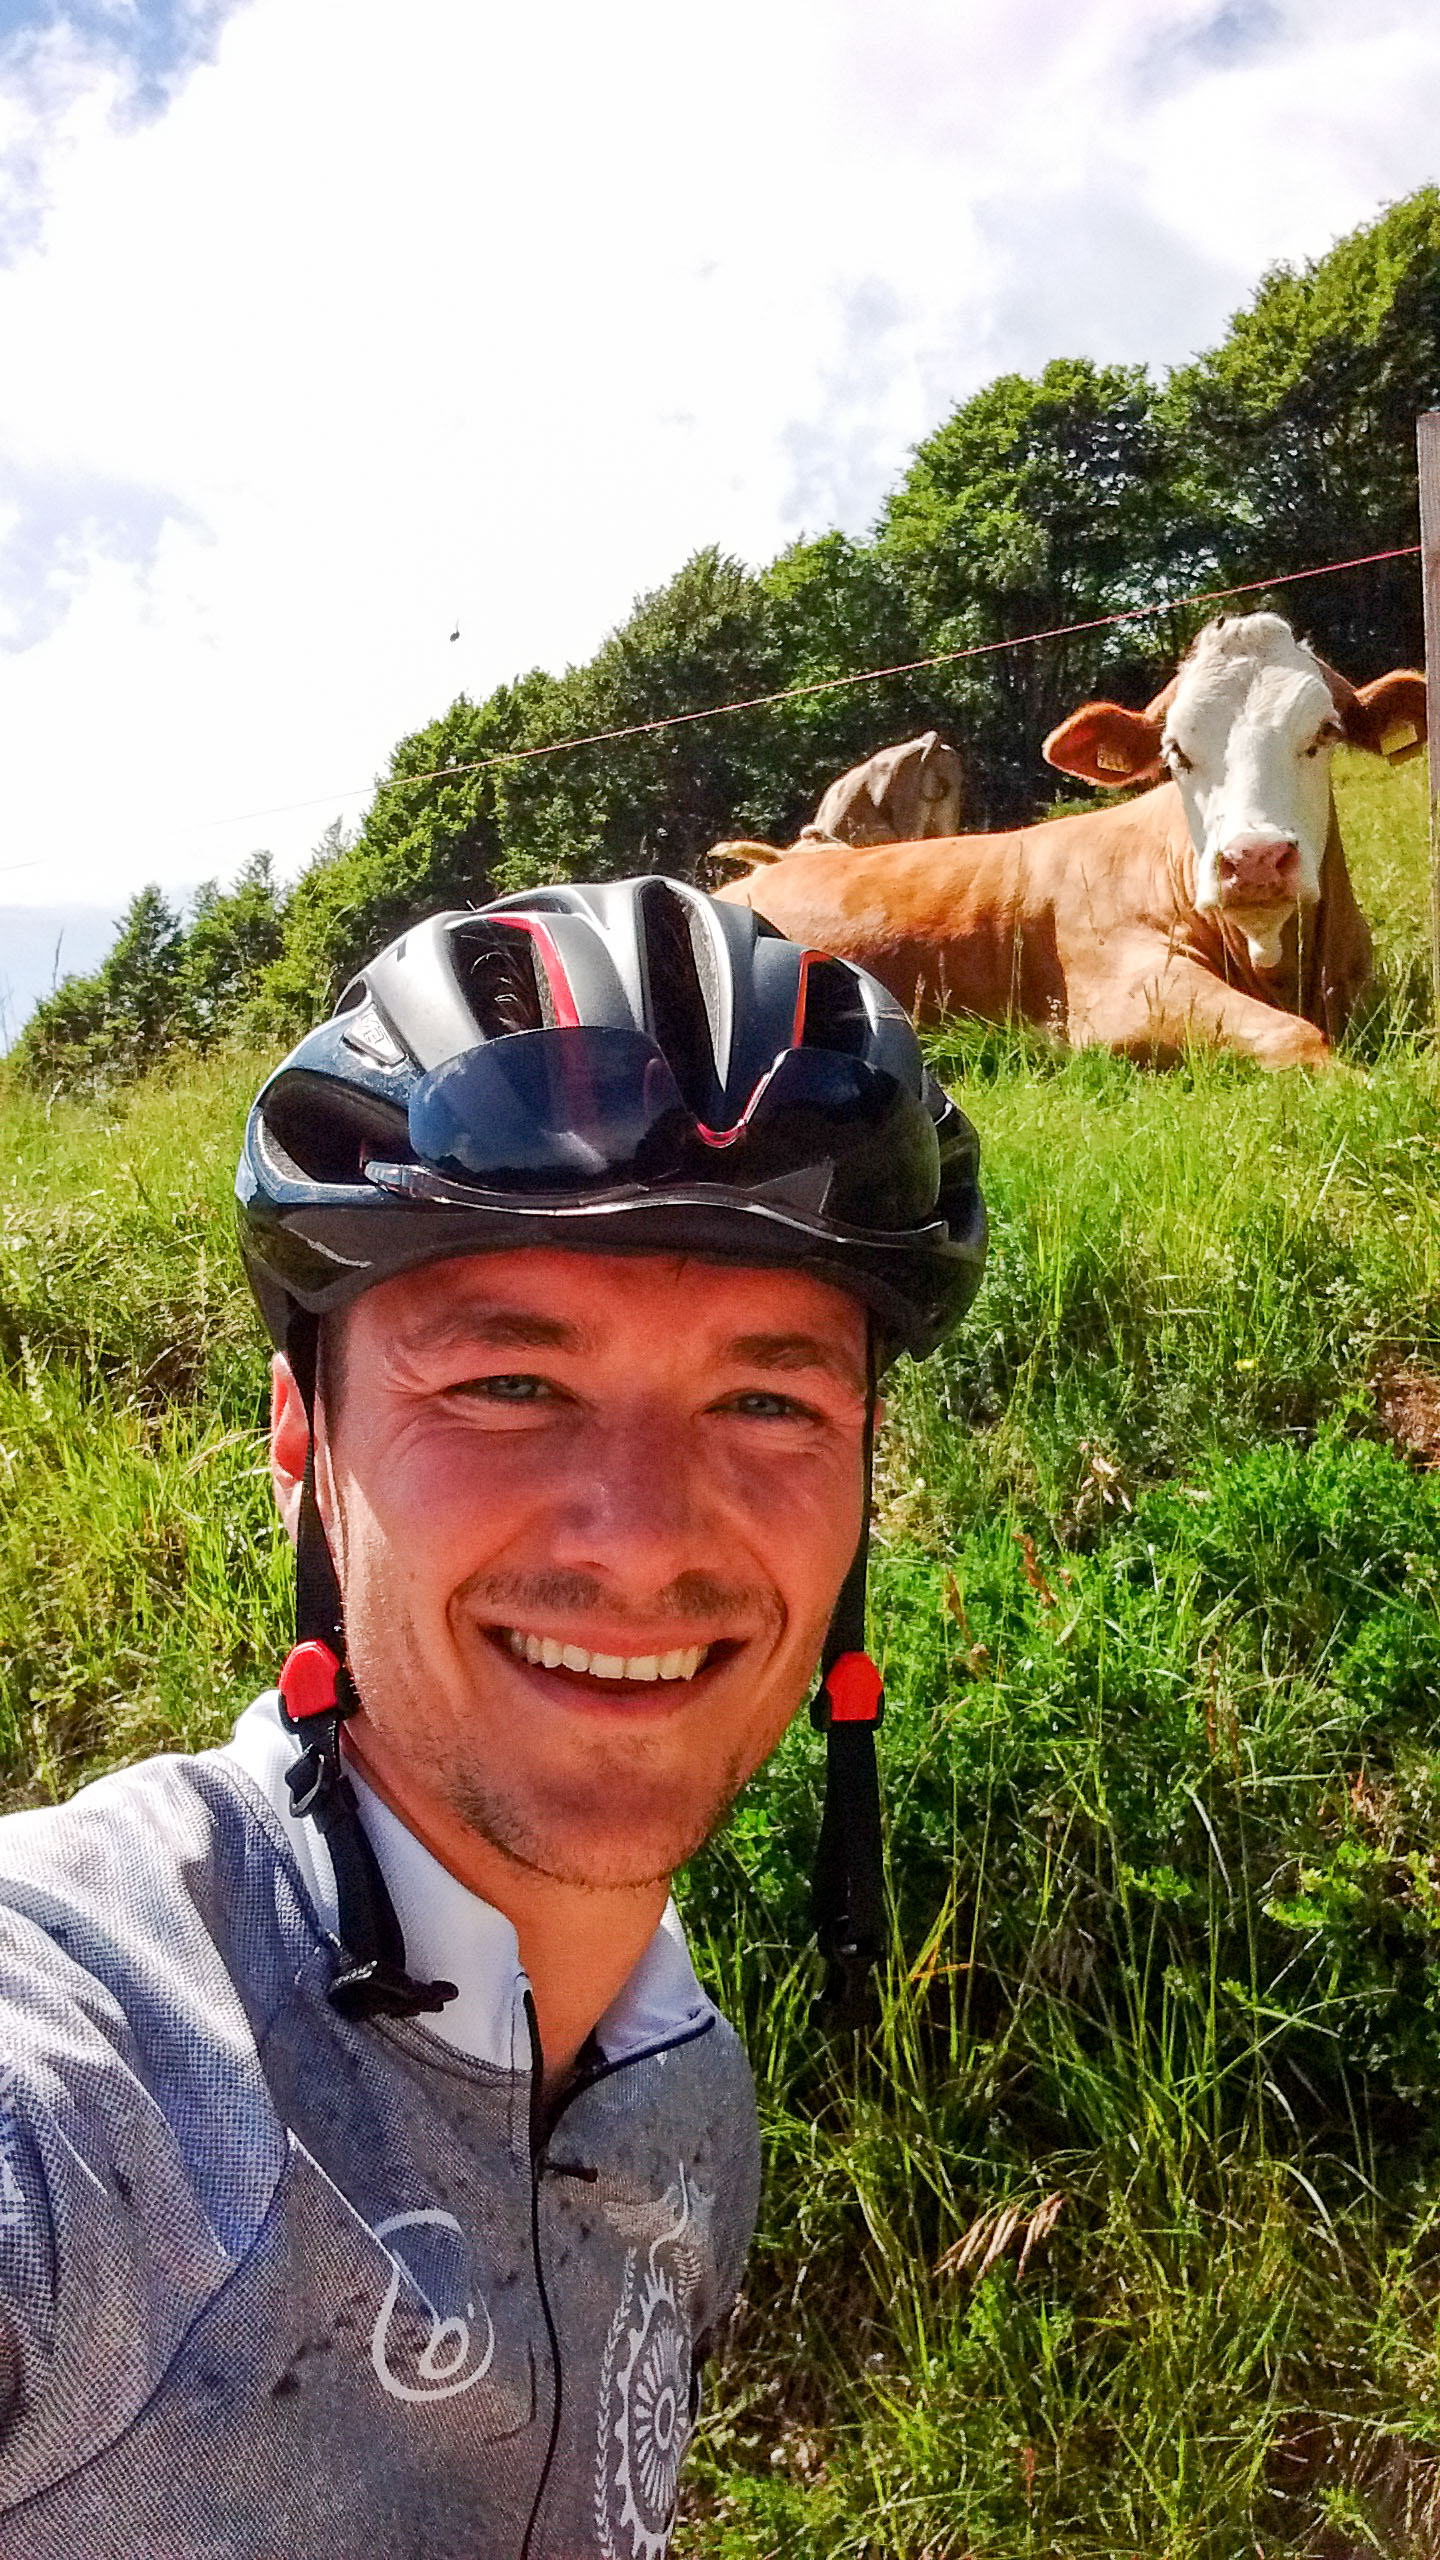 non mancano i selfie con le vacche locali